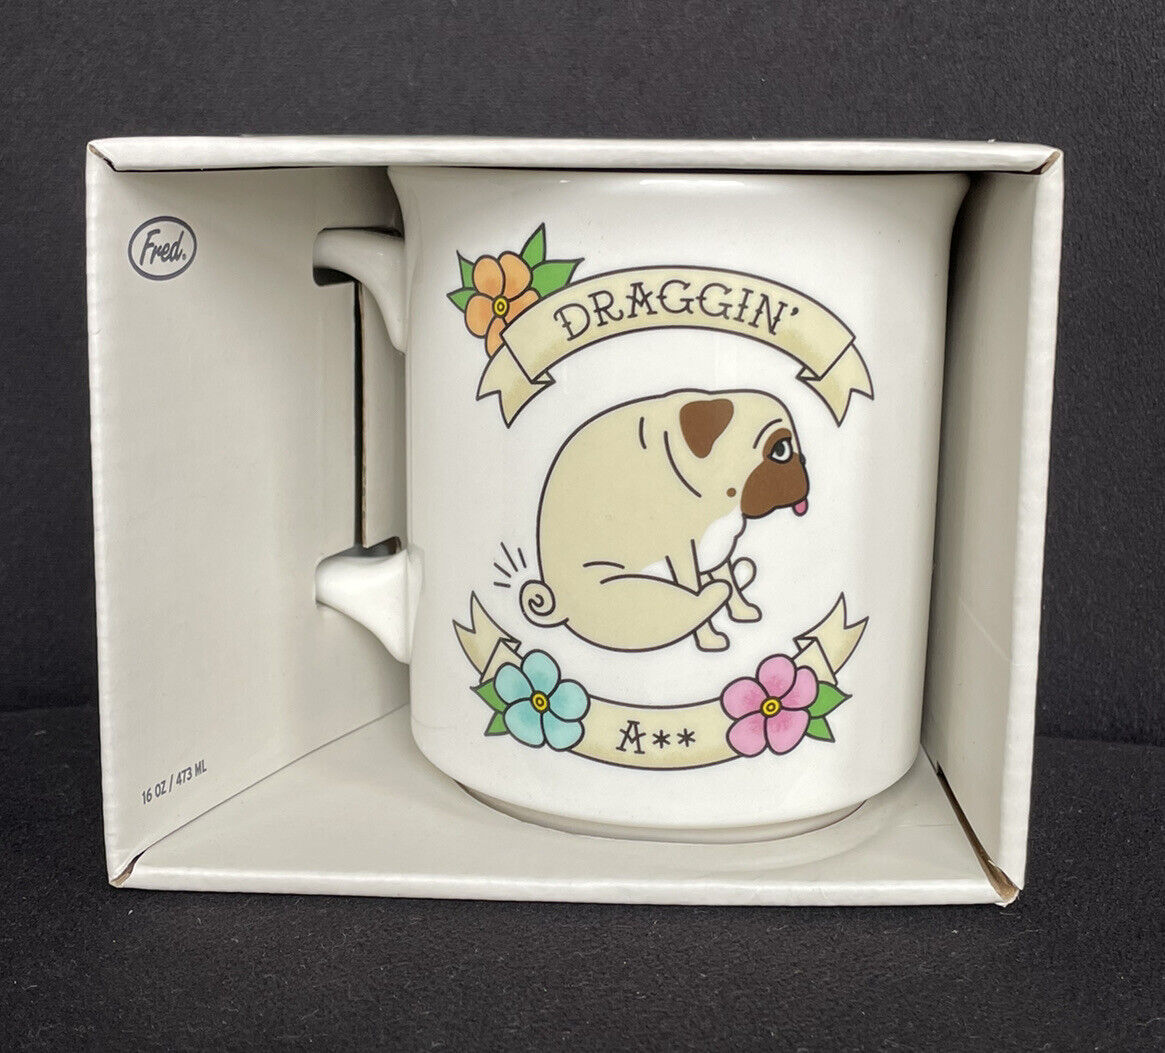 Genuine Fred Draggin A** Pug Dog Coffee Mug Cup Novelty Funny 16 oz NIB